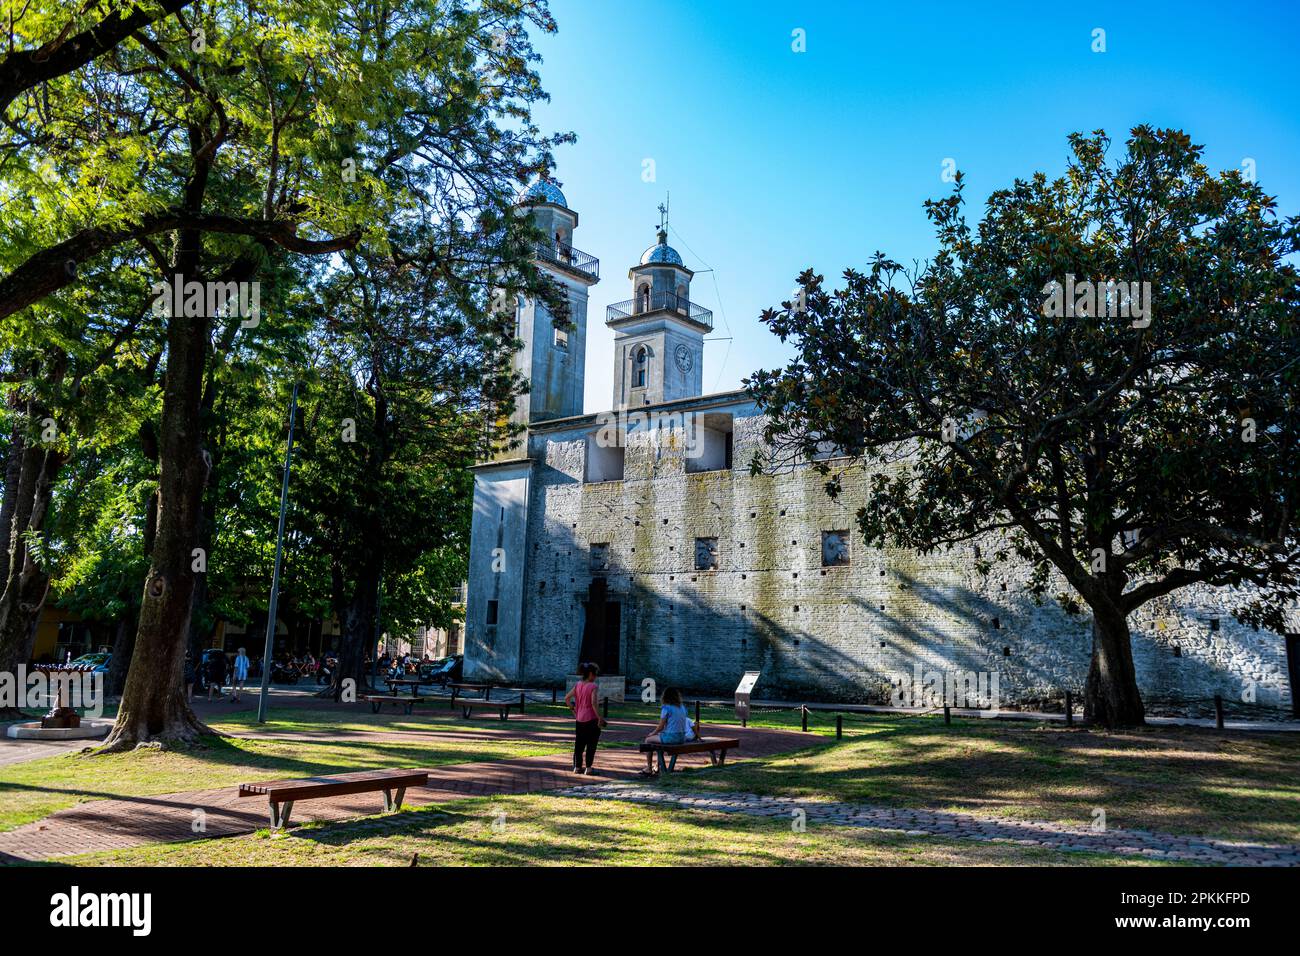 Basilica del Santisimo Sacramento, Colonia del Sacramento, UNESCO World Heritage Site, Uruguay, South America Stock Photo